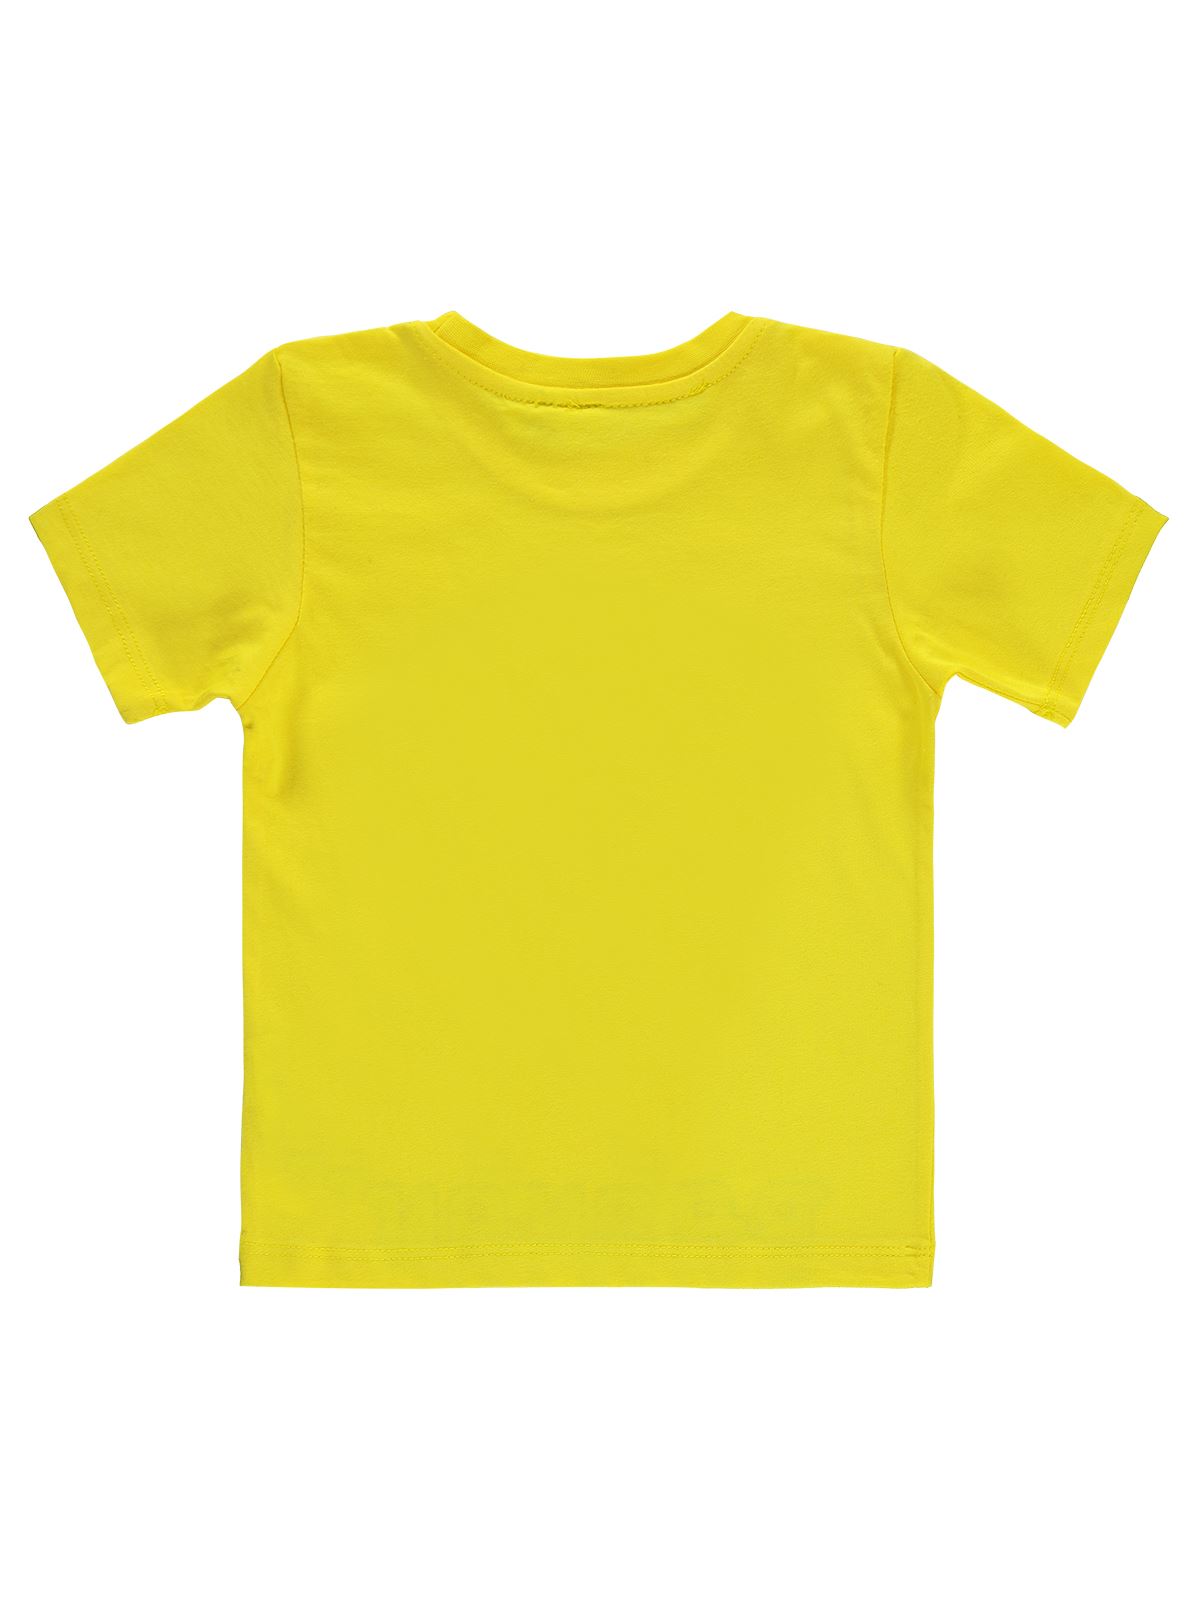 Tazmania Erkek Çocuk Tişört 6-9 Yaş  Sarı